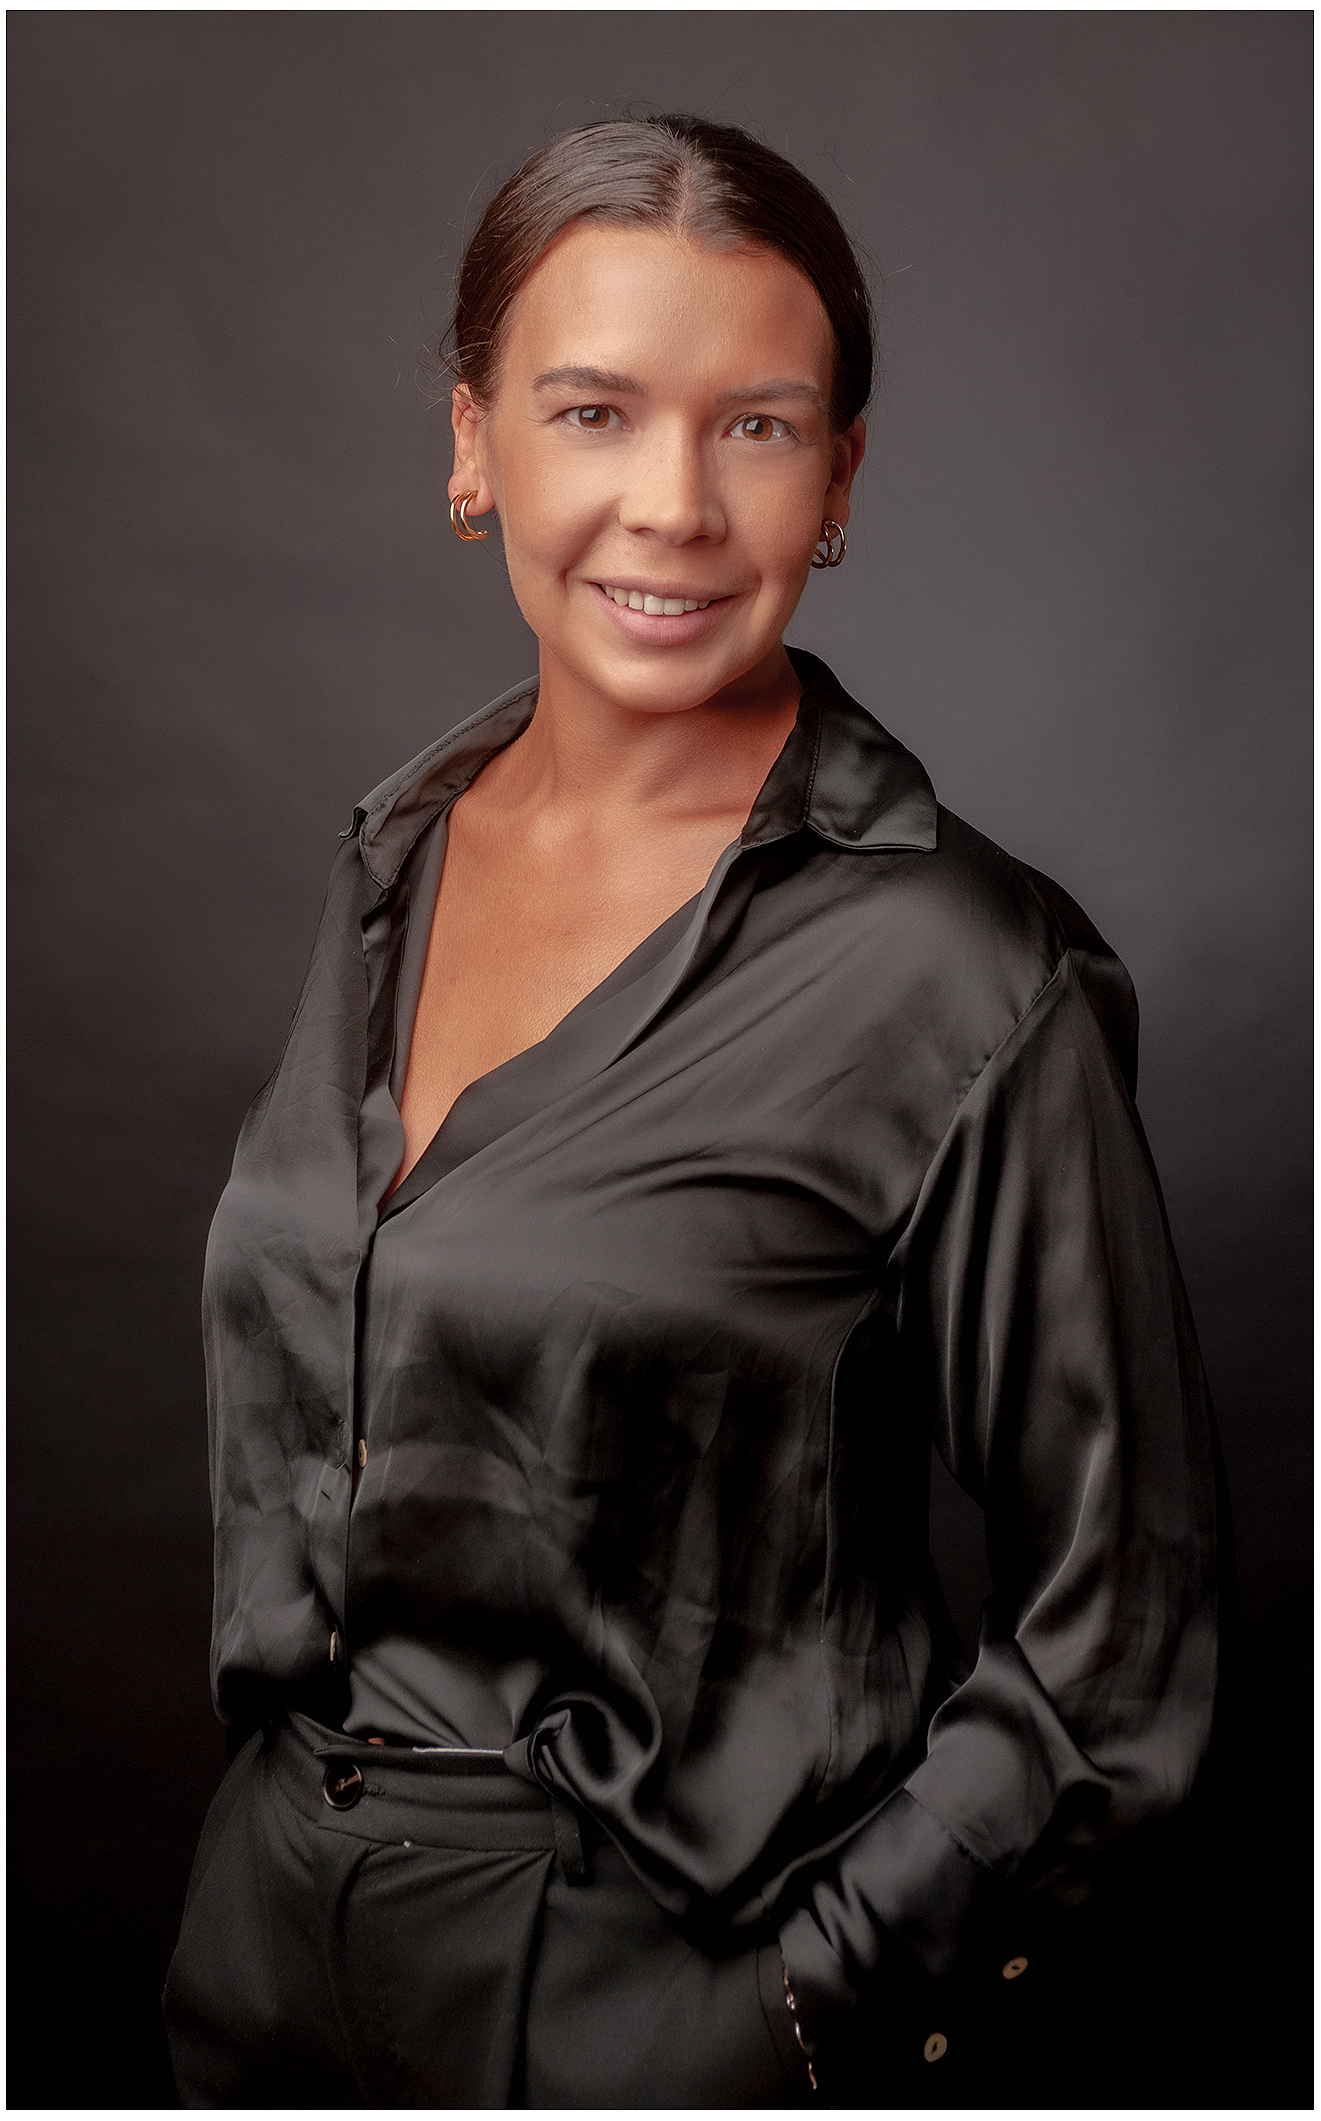 Eine Frau mittlerer Alter in einem schwarzen Hemd posiert für ein Businessportrait